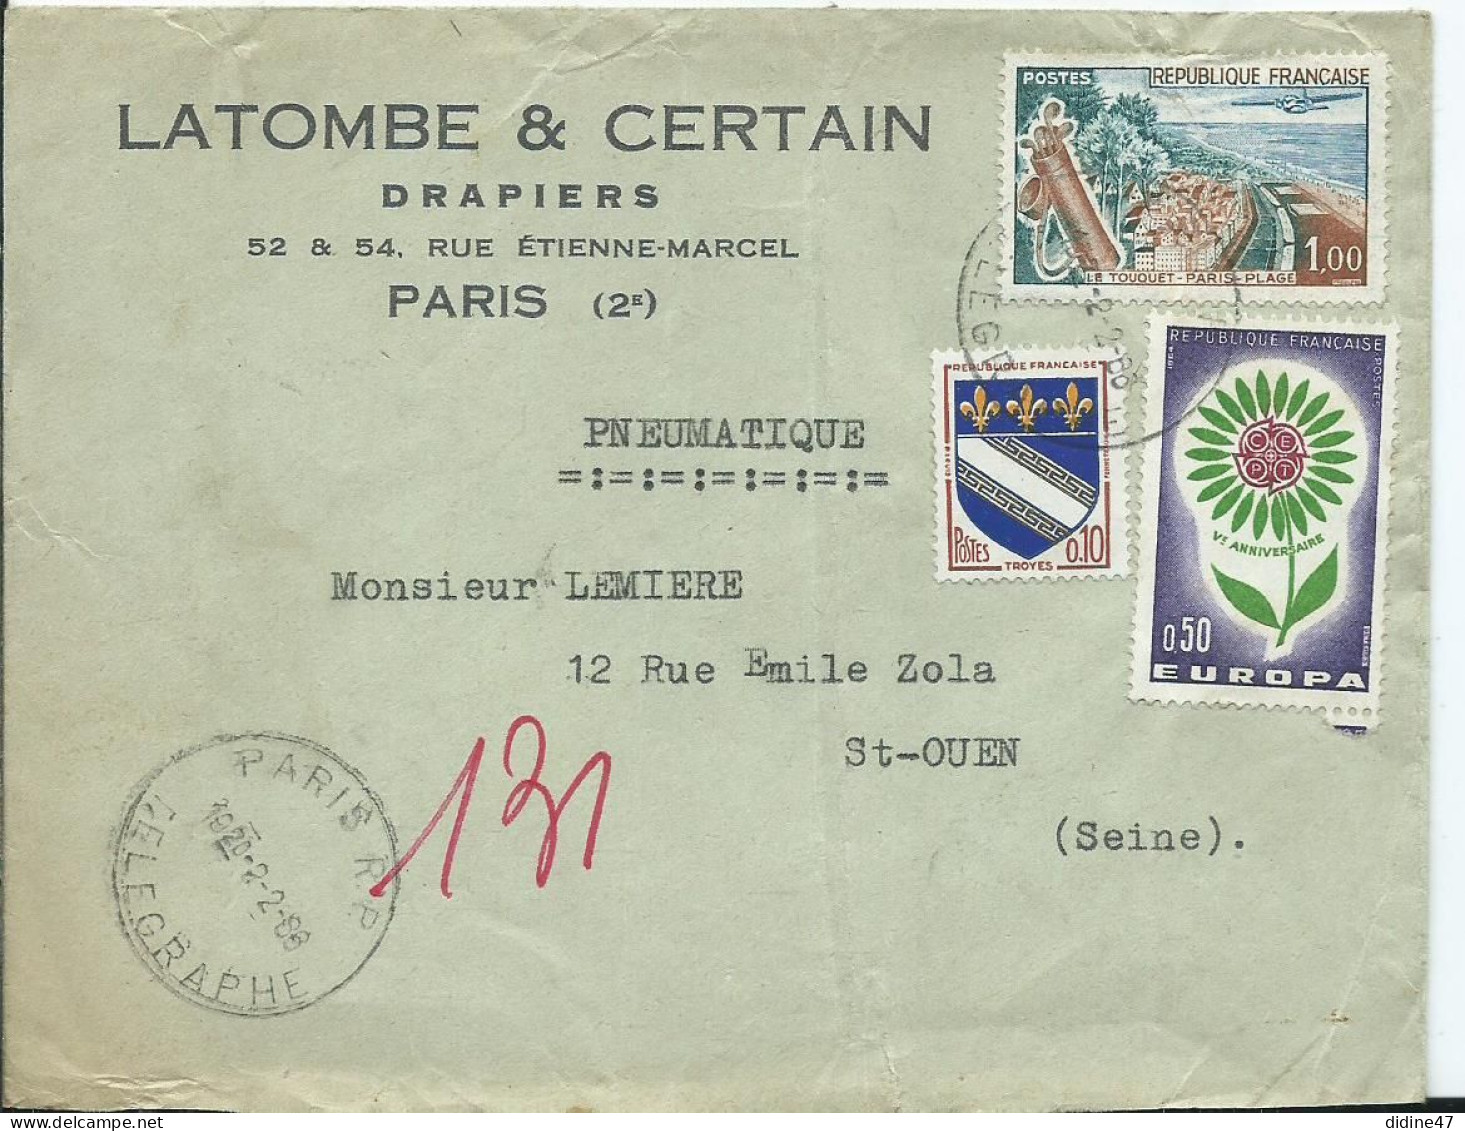 FRANCE - LETTRE PNEUMATIQUE - PARIS R.P. TÉLÉGRAPHE - Telegraph And Telephone